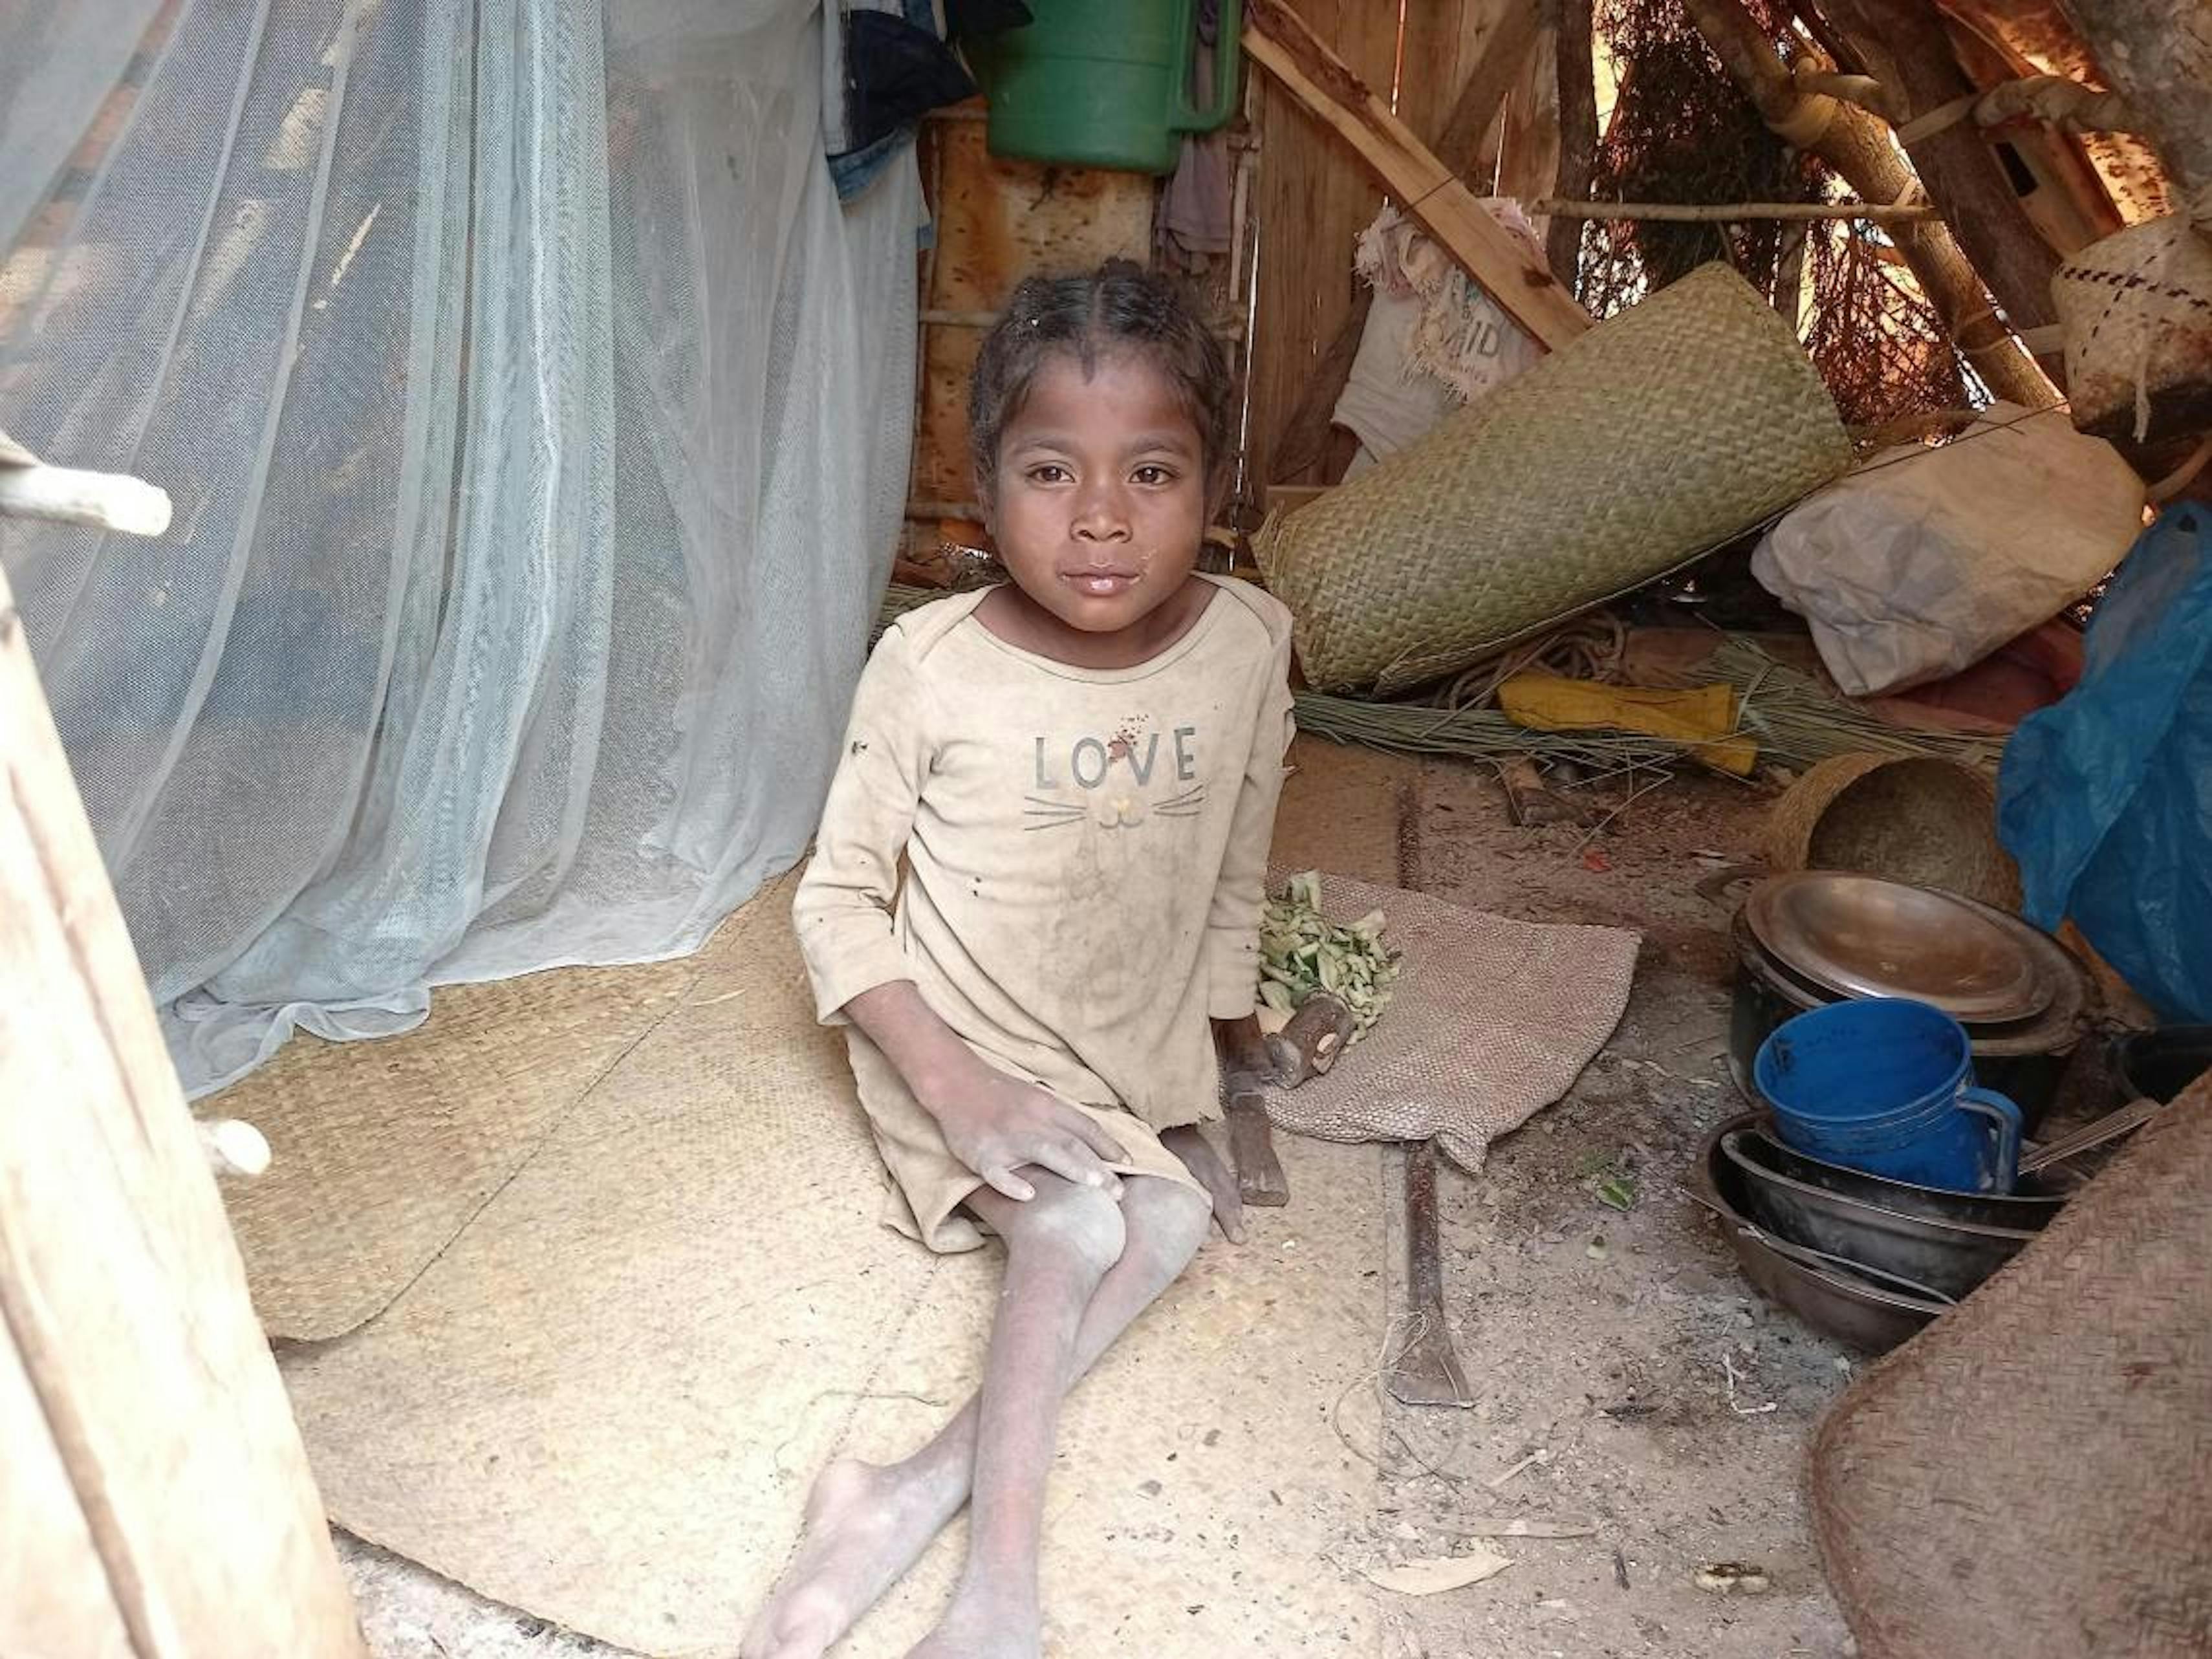 Tenasoa ha 14 anni e vive con una disabilità fisica. Incapace di camminare, si trascina ogni giorno per raggiungere la miniera di mica ed estrarre almeno 2 kili di mica al giorno.